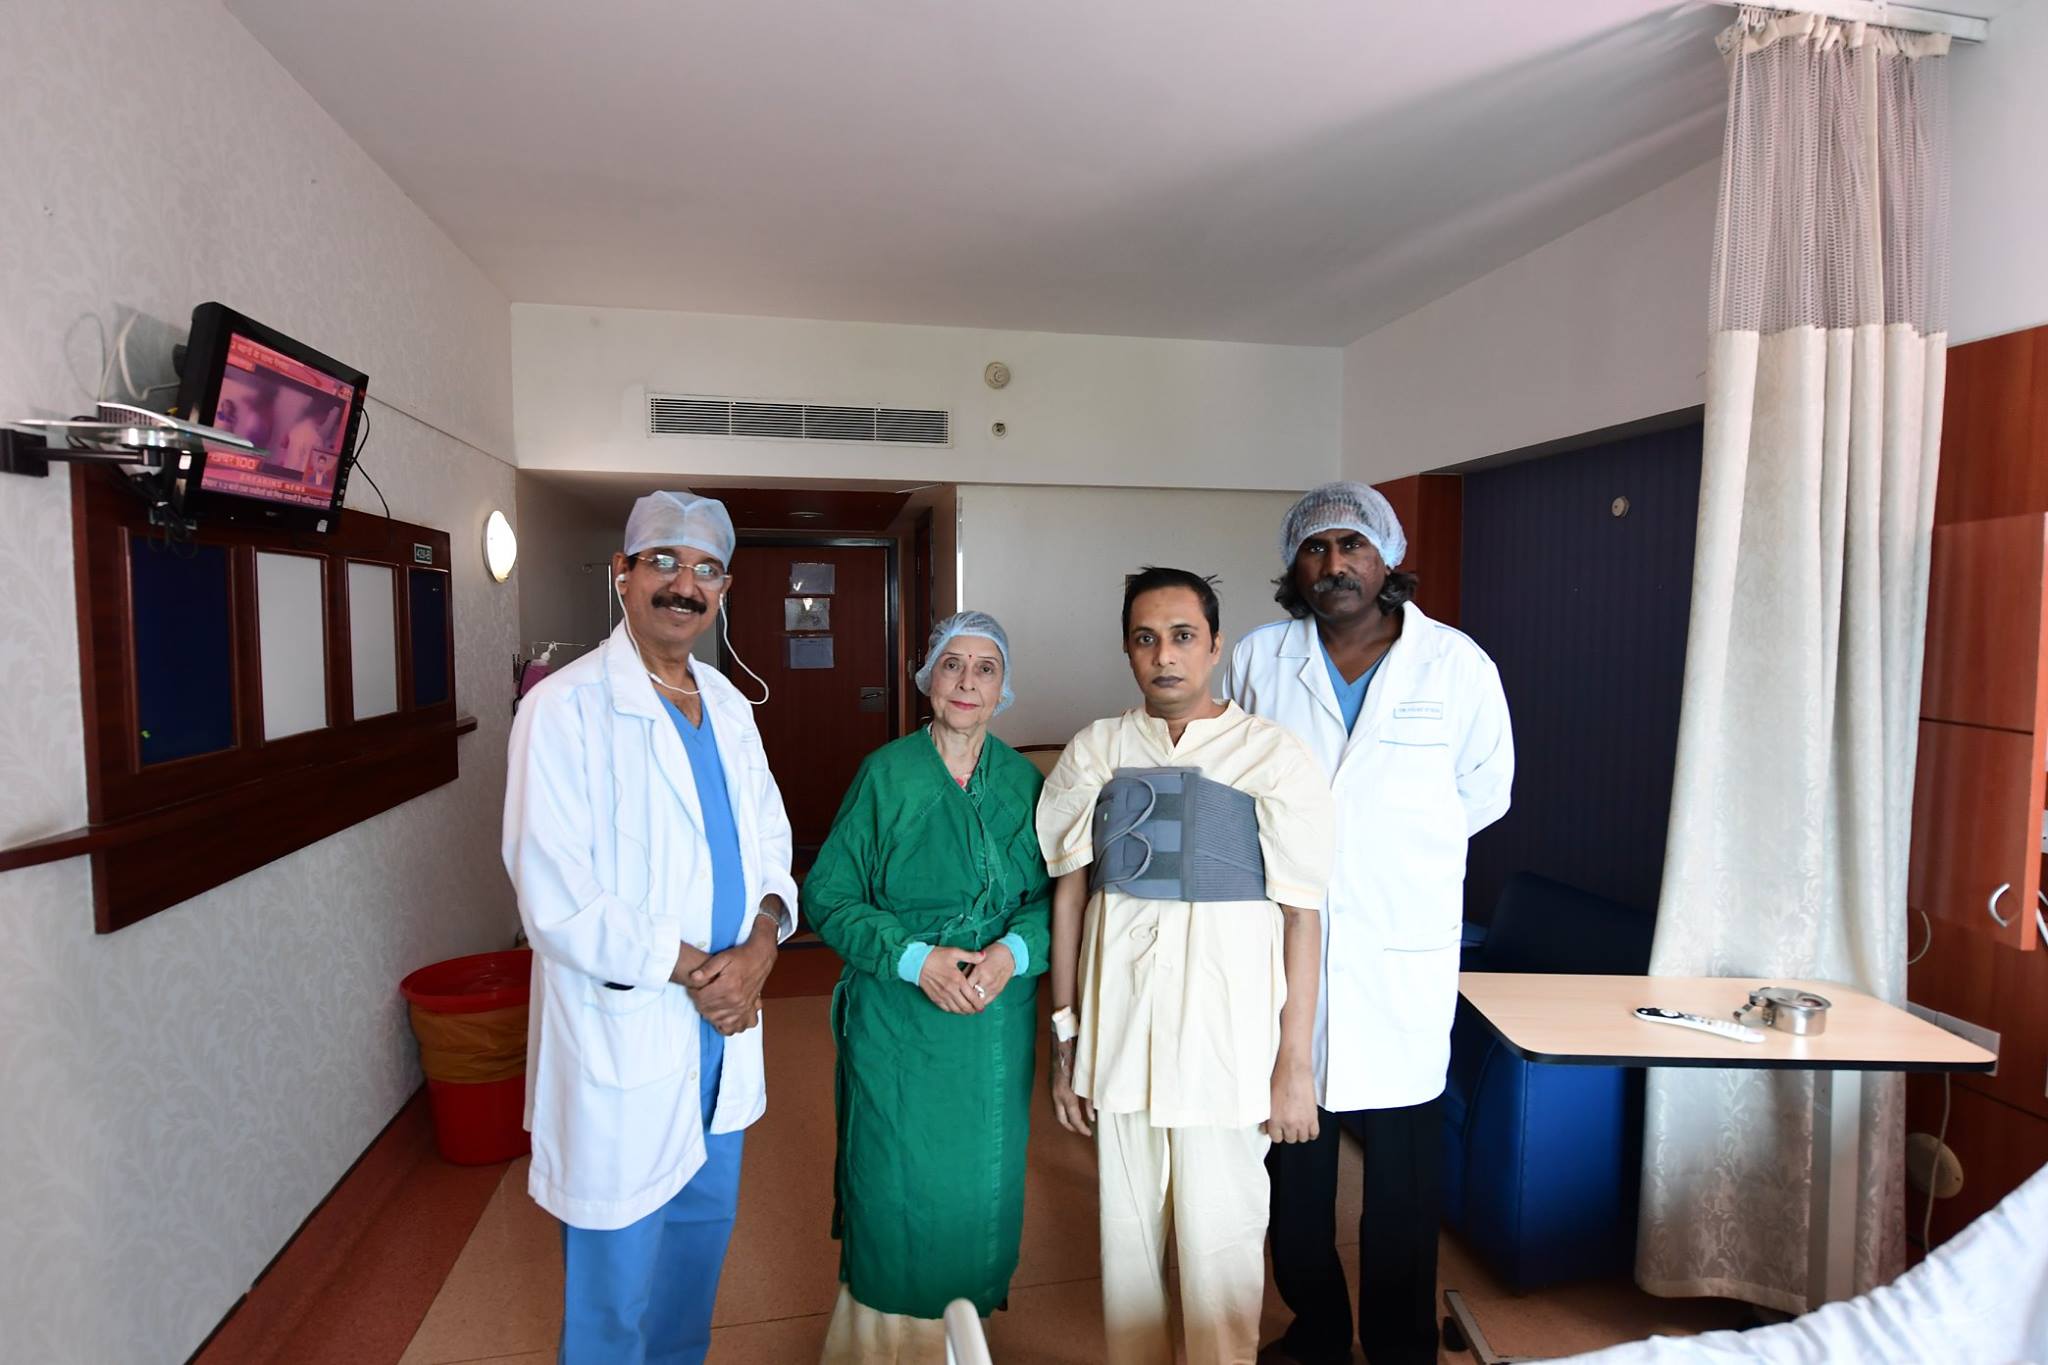 السيدة سومان راميش تولسياني مع الدكتور باندا والدكتور فيجاي دي سيلفا ومتلقي زراعة القلب في مستشفى القلب الآسيوي - باندرا ، بعد الانتهاء بنجاح من الجراحة وخروج المريض.